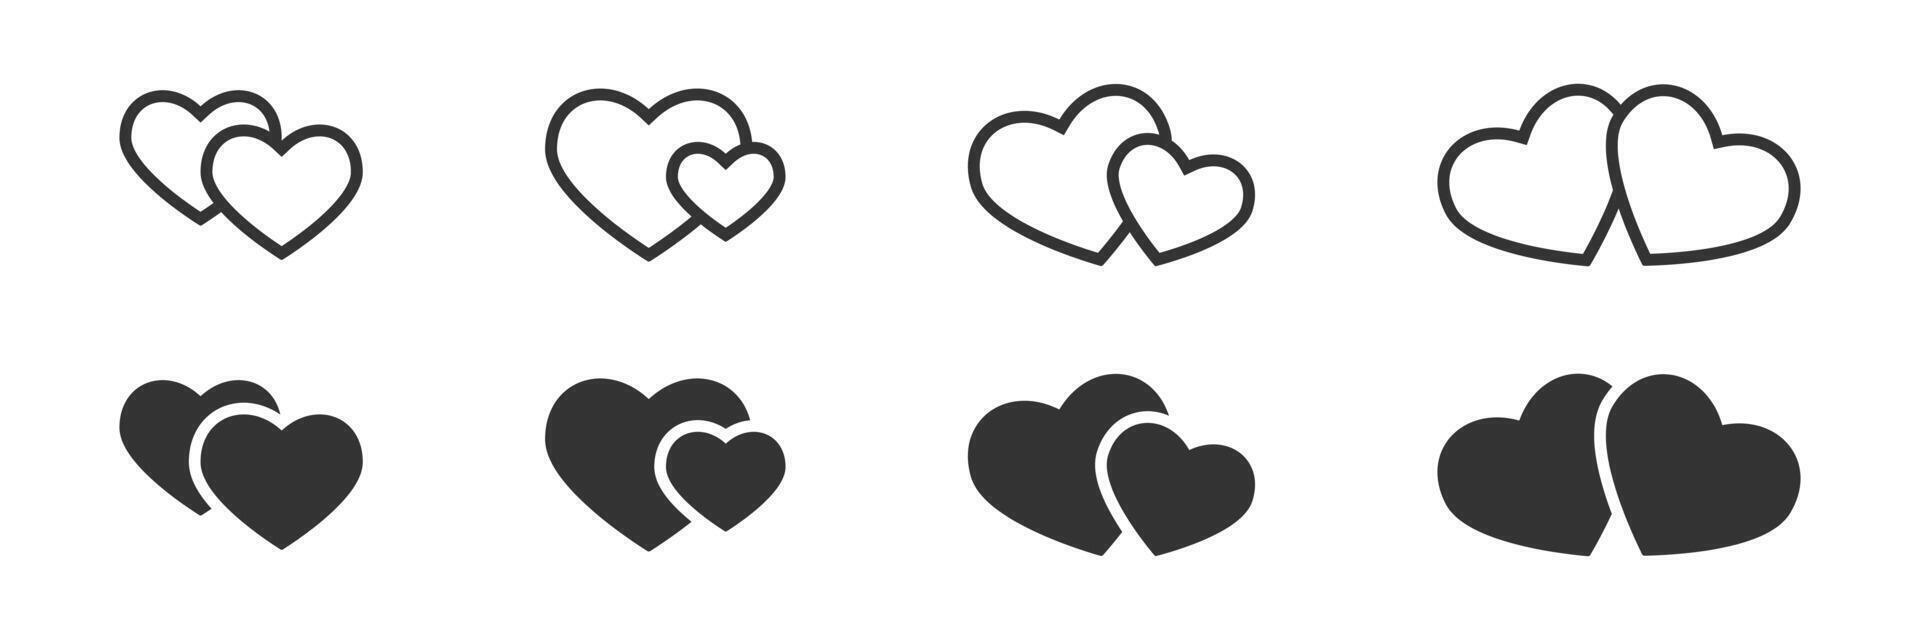 två hjärtan ikoner. vektor illustration.